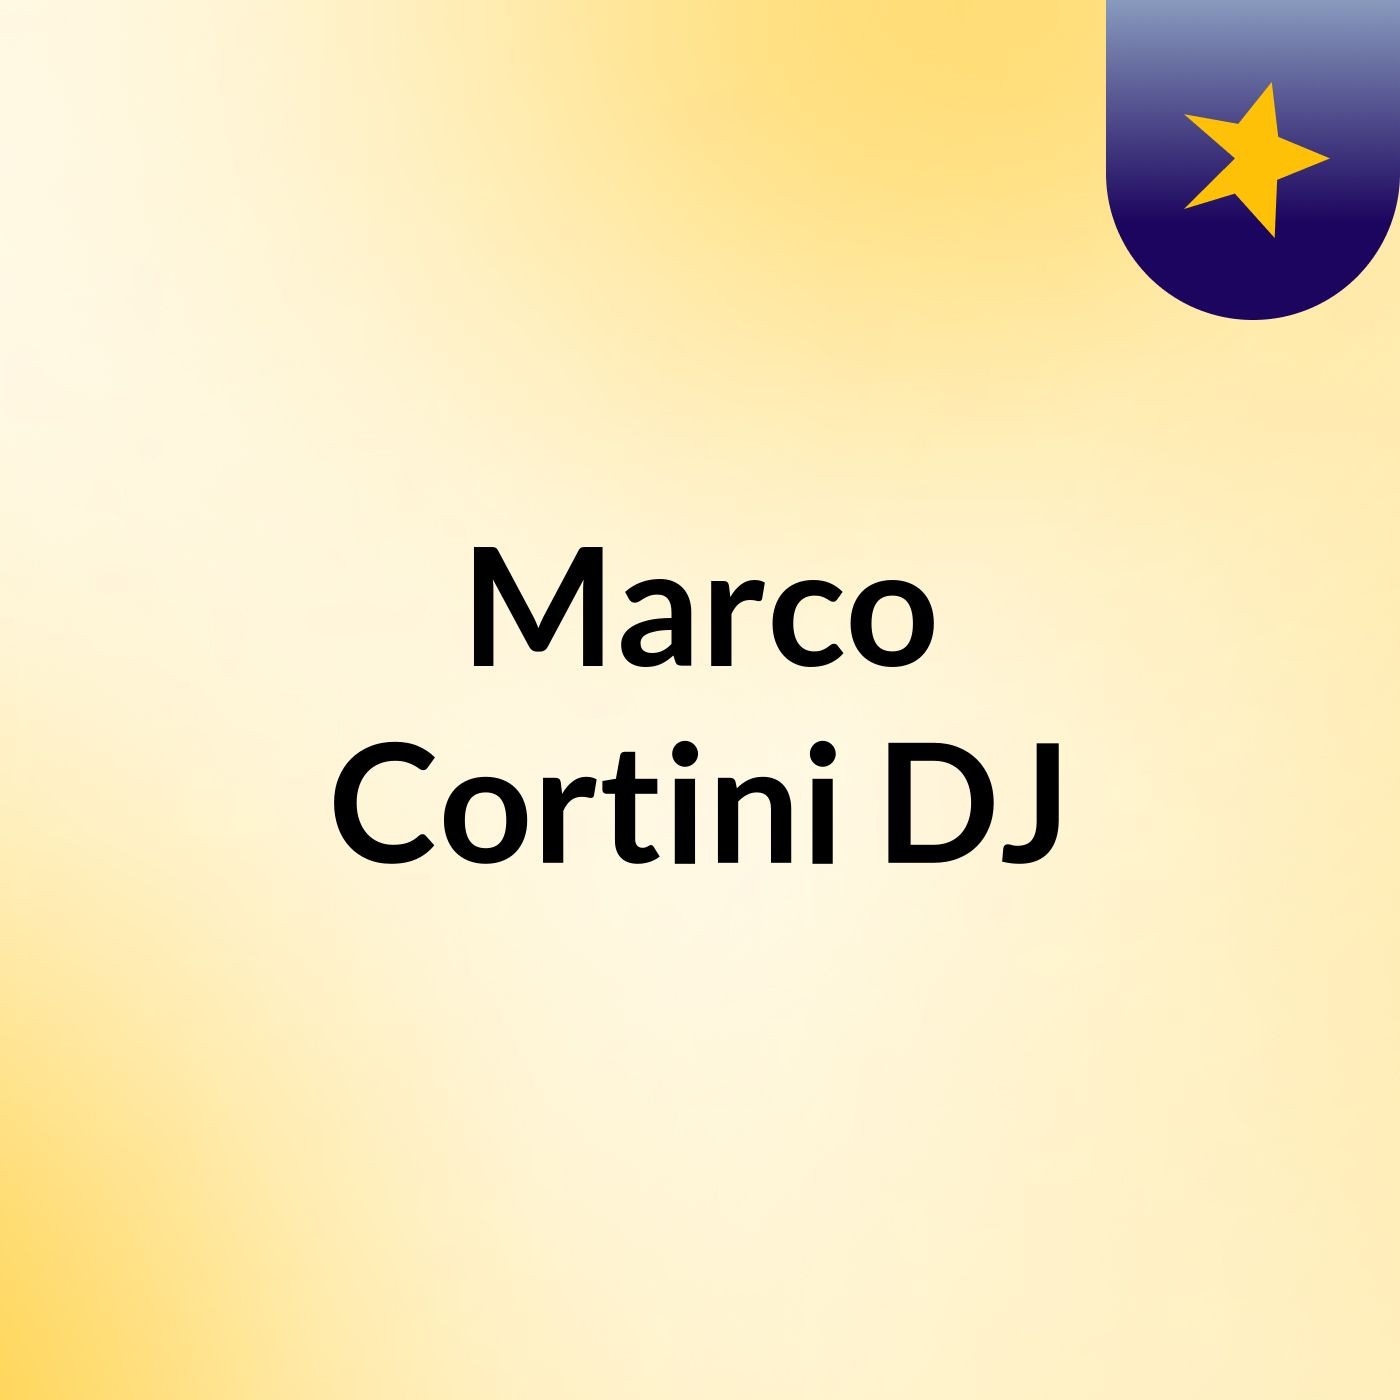 Marco Cortini DJ